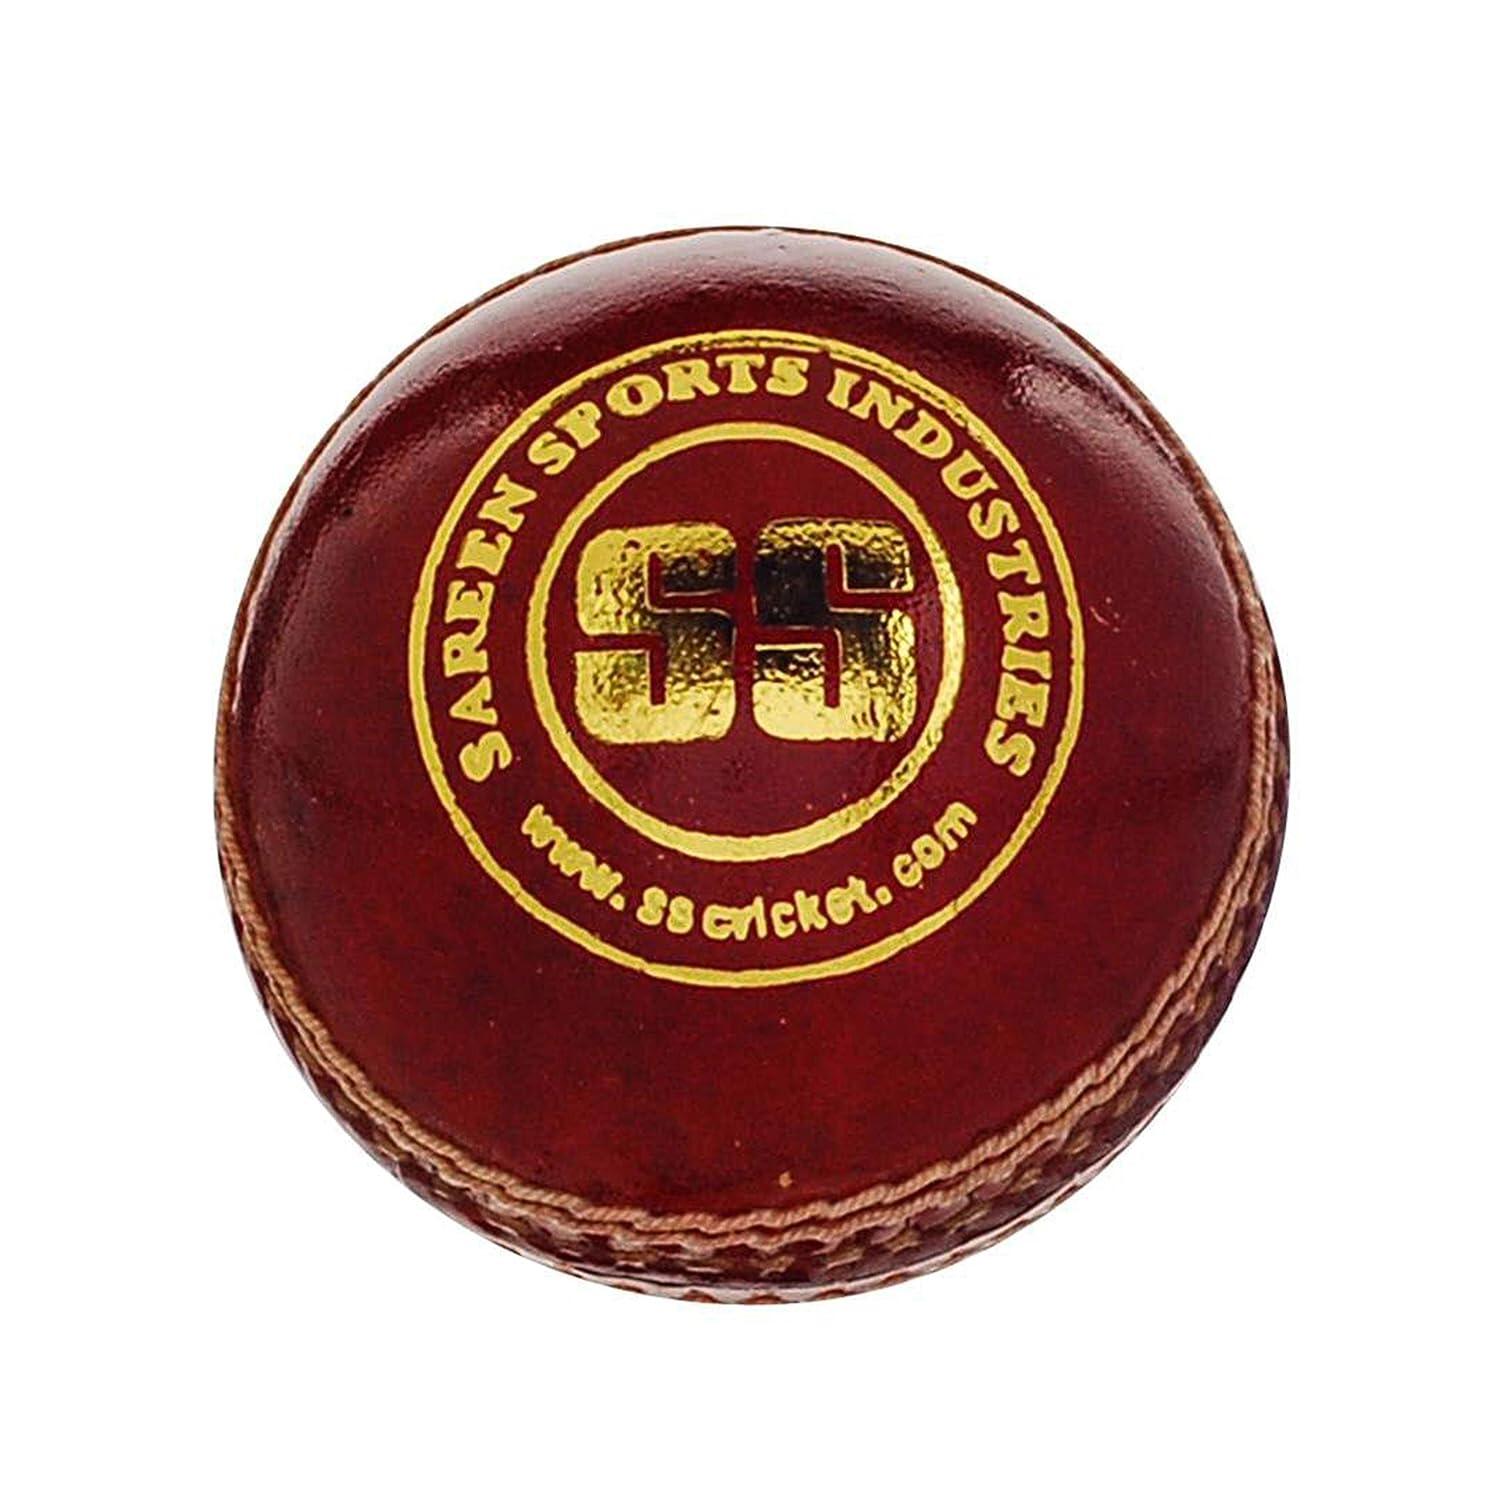 SS Swinger Cricket Ball -Pack of 2 1/4